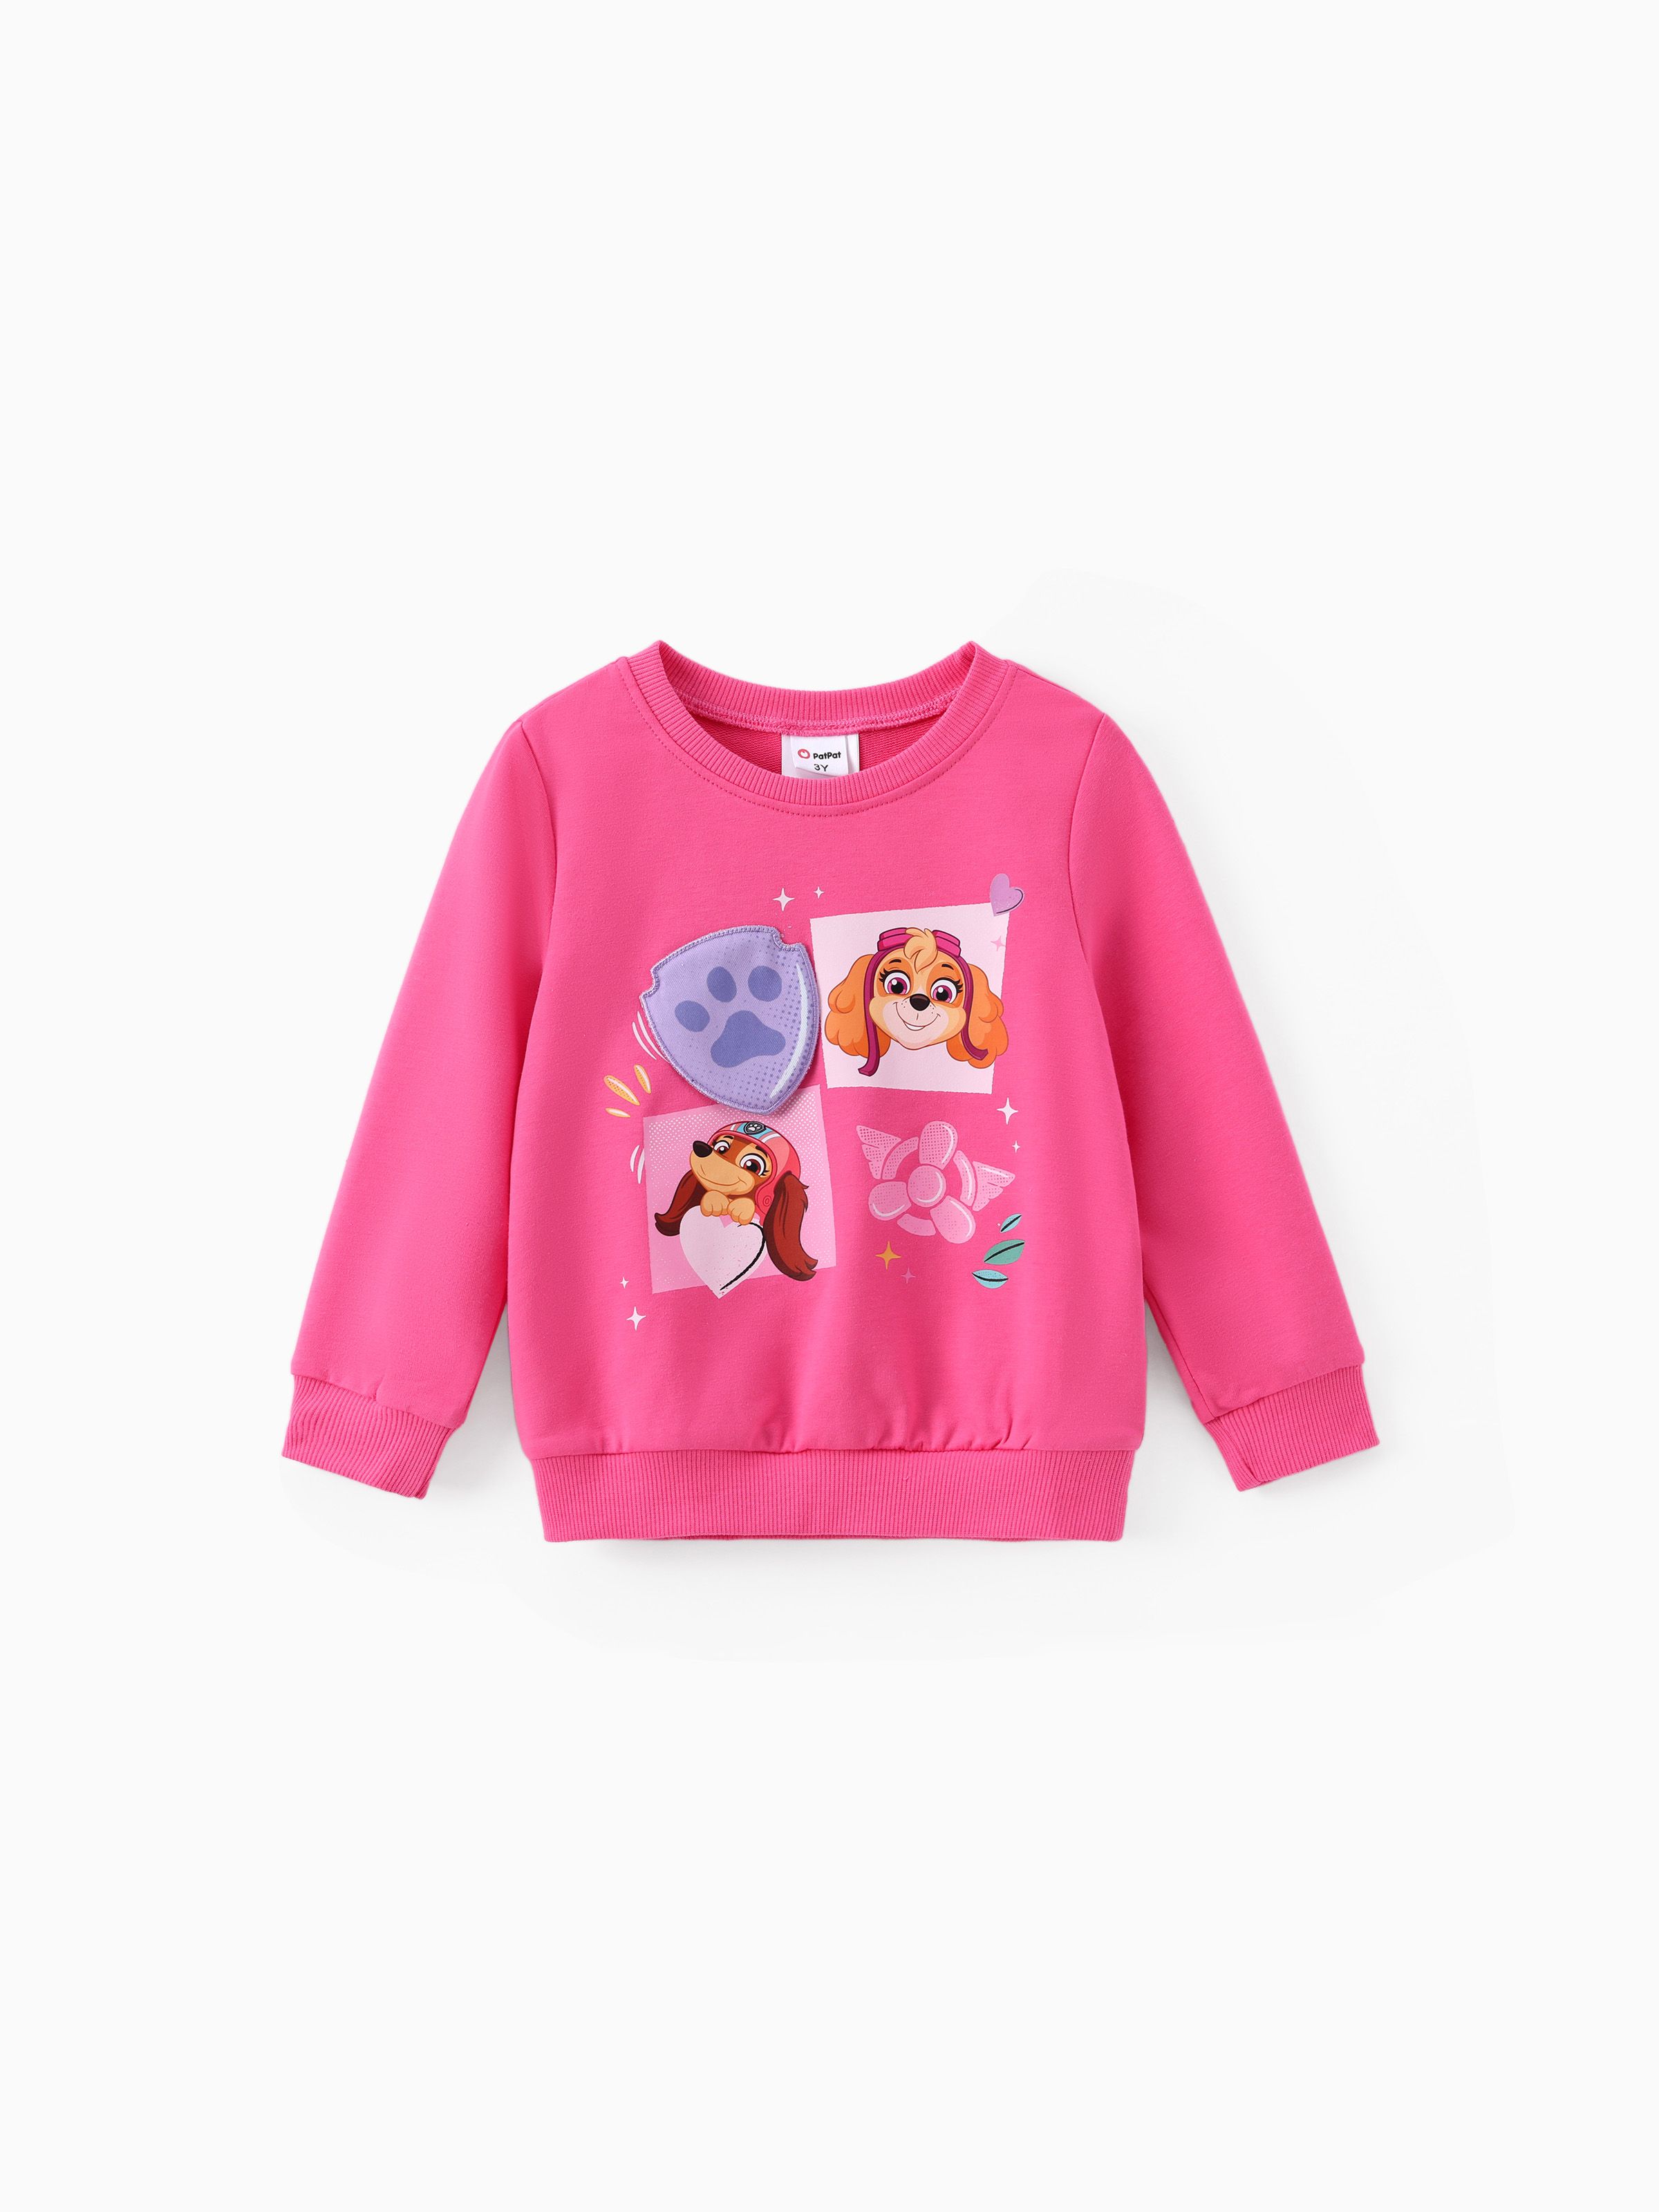 

Paw Patrol Toddler Girls 1pc Character Print Sweatshirt